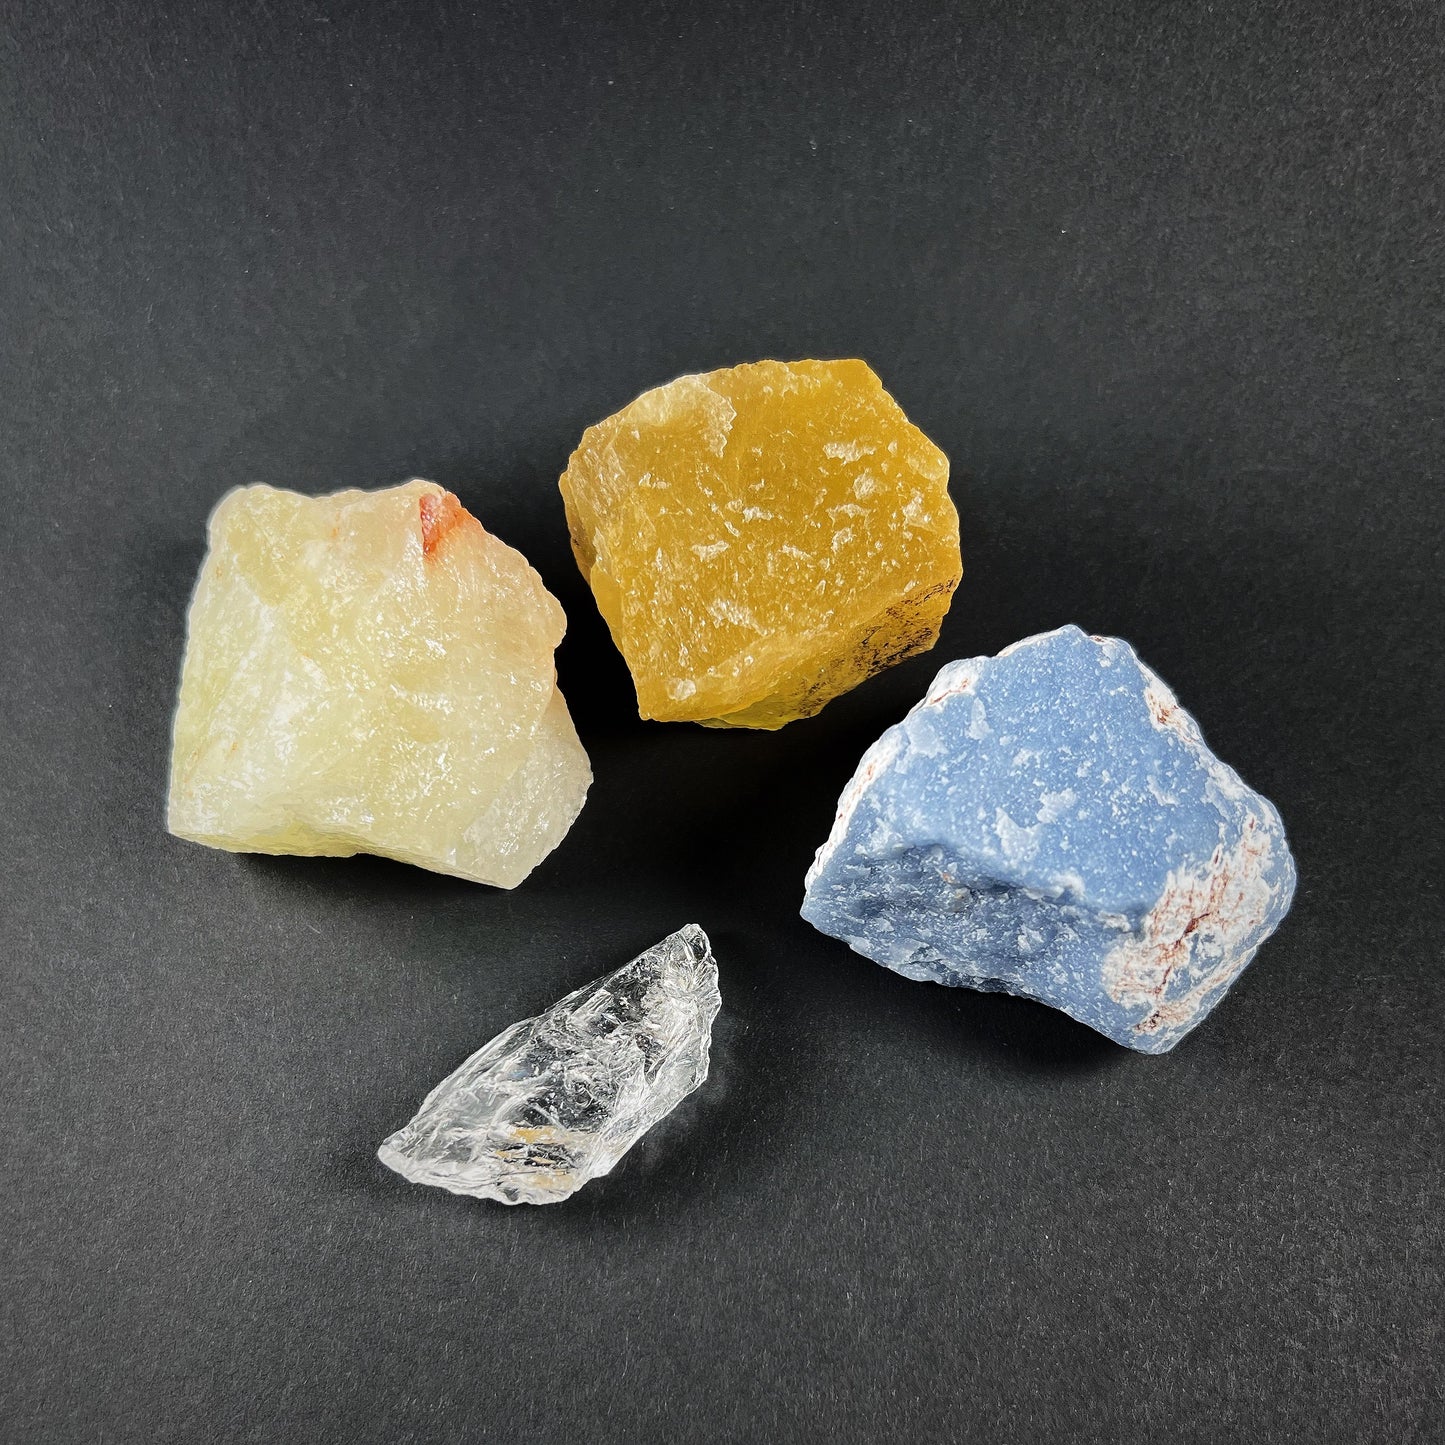 Crystal grid of four raw stones: fluorite, sulphur quartz, quartz and angelite.